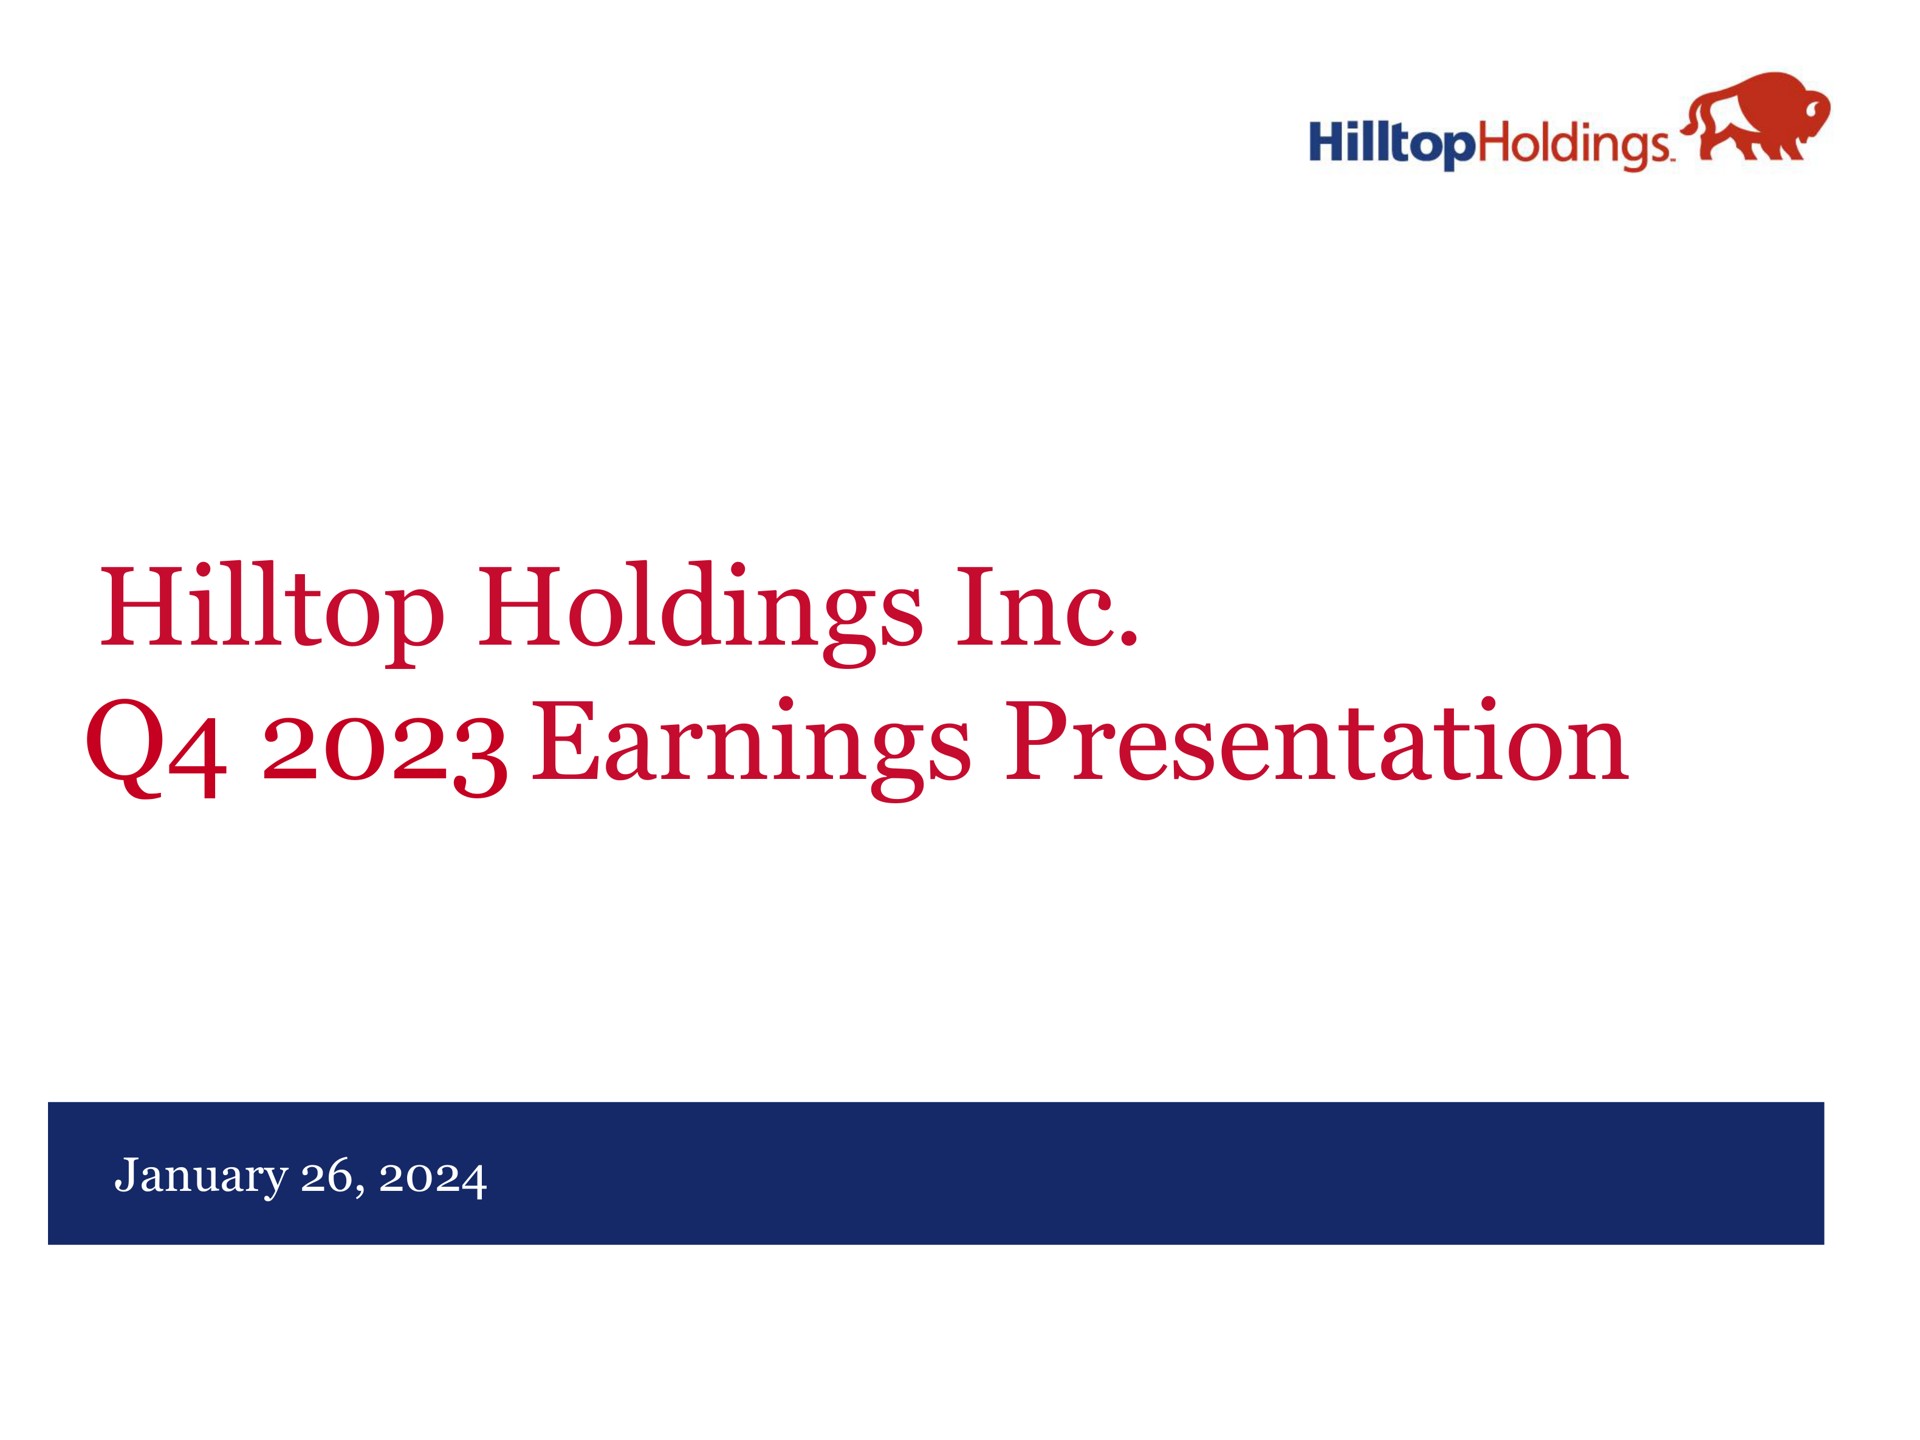 hilltop holdings earnings presentation | Hilltop Holdings